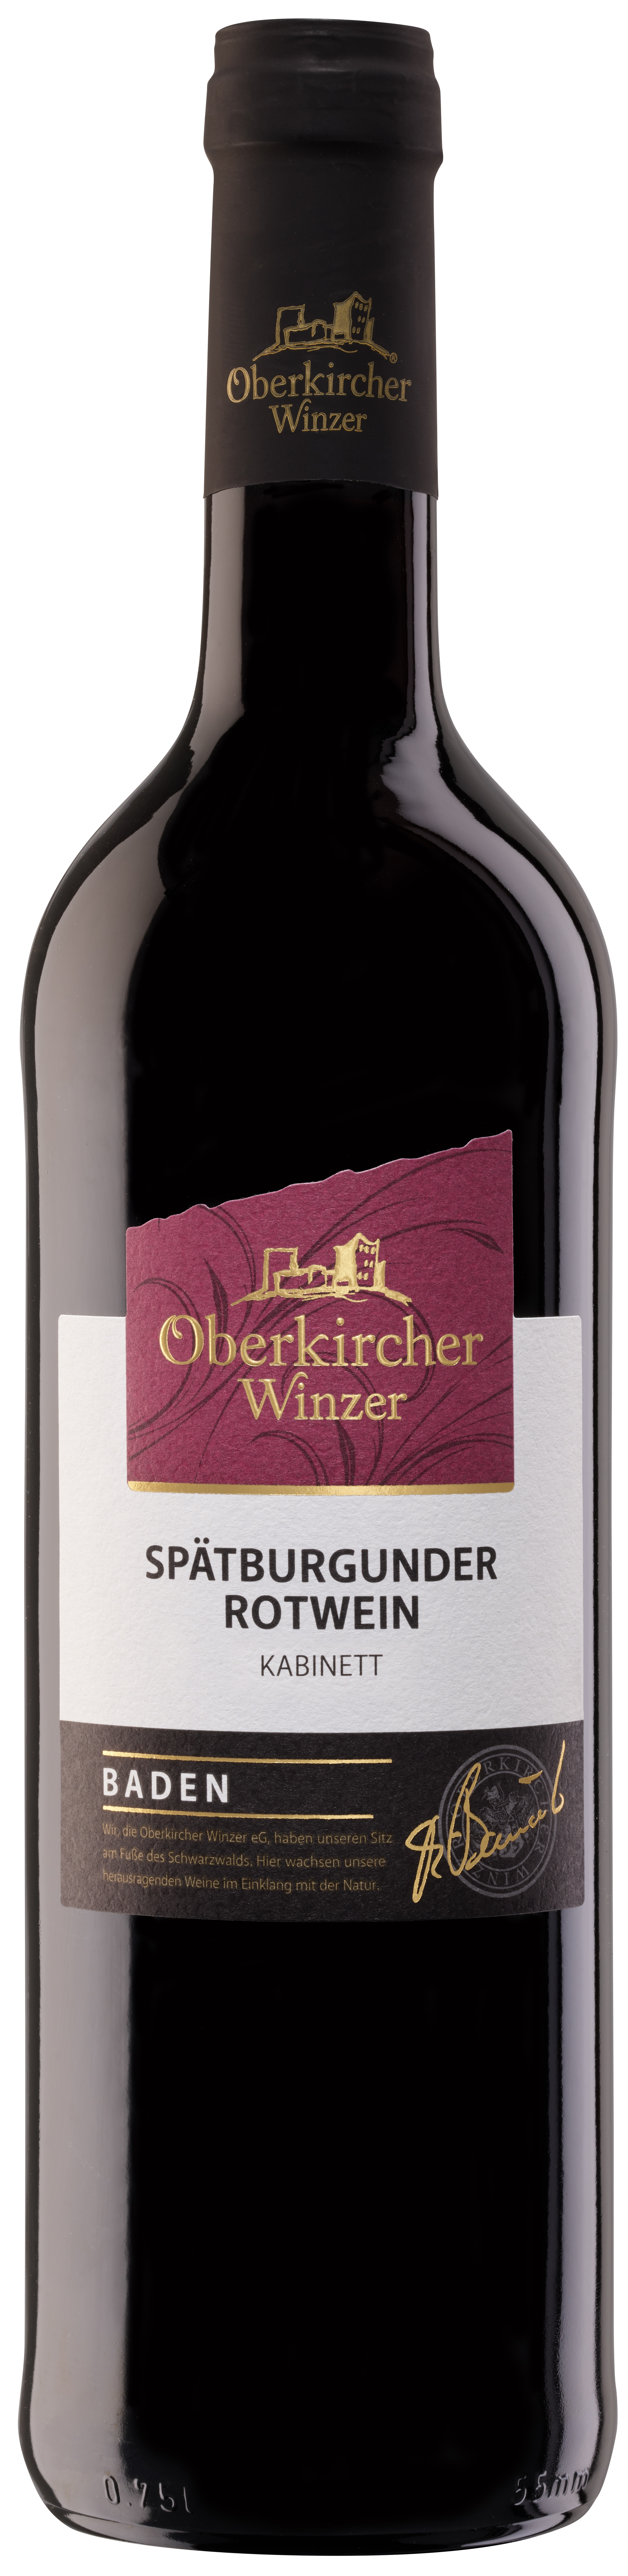 Collection Oberkirch, Spätburgunder Rotwein Kabinett | OSR416-2020 -  Oberkircher Winzer